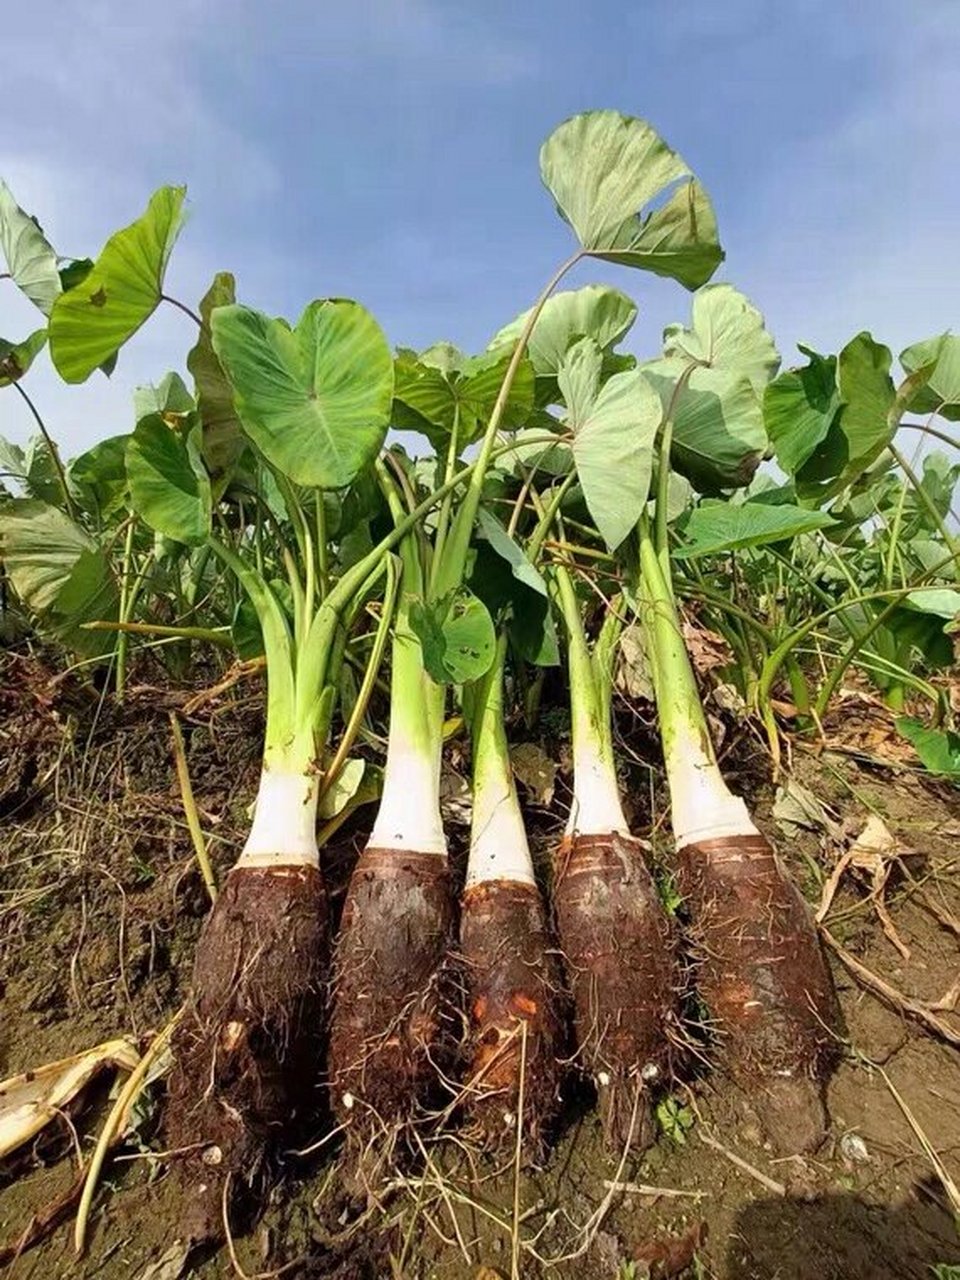 乐昌炮弹芋头 乐昌炮弹芋头是广东韶关的特产之一,当地种植香芋历史